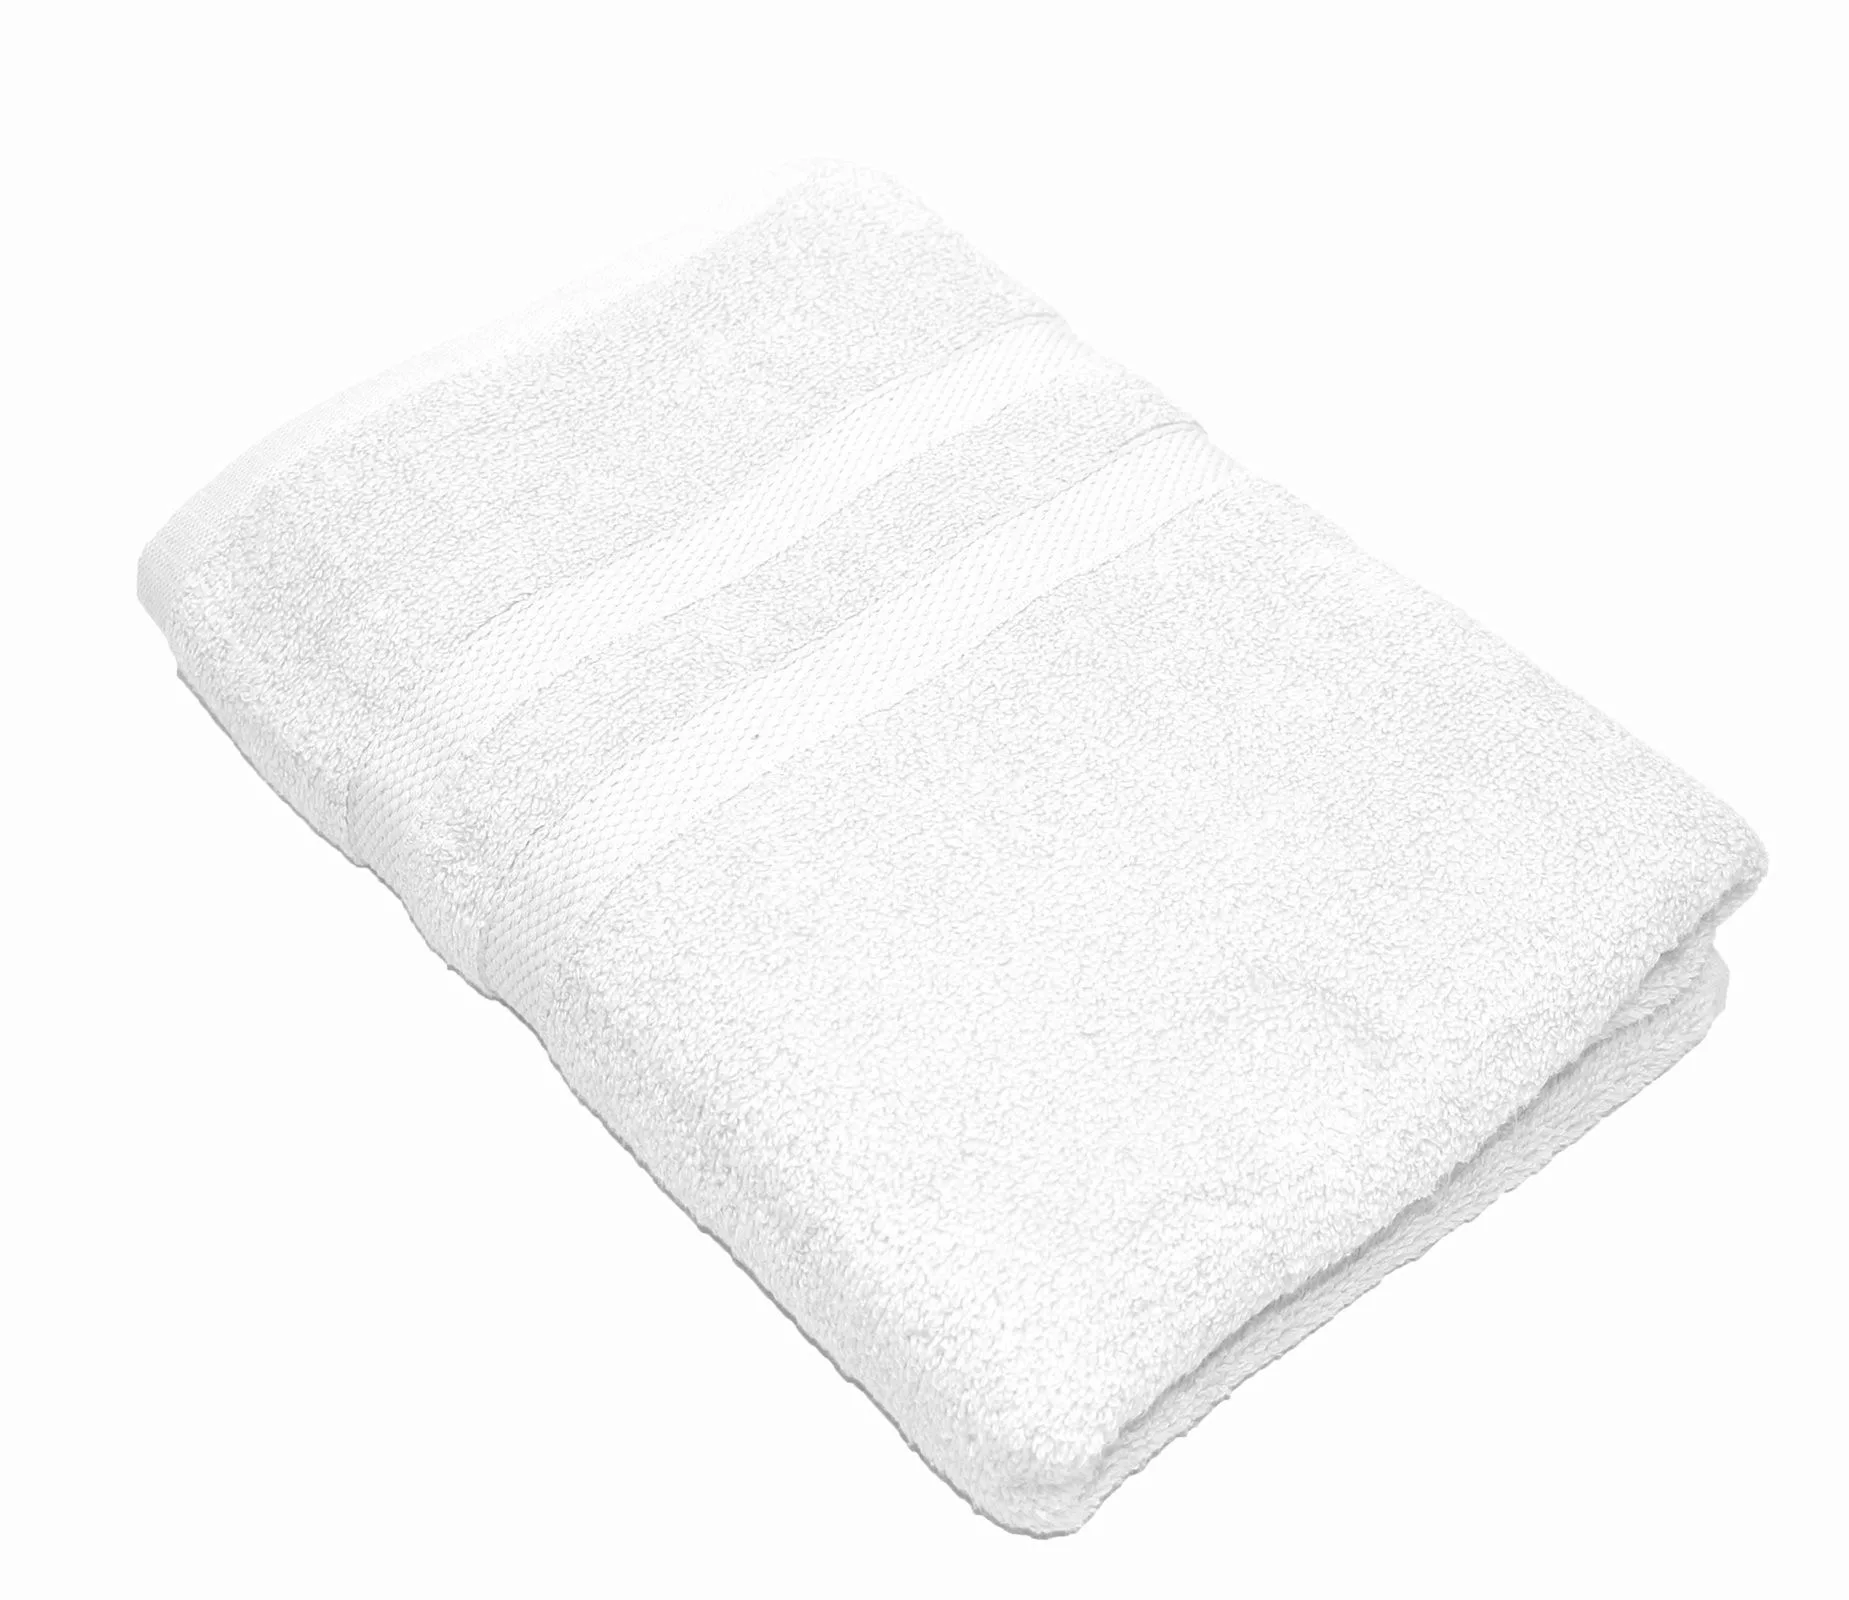 Handtuch Serie P.K. Soft Cotton 100% Baumwolle-weiß-2 er Pack Handtuch 50x1 günstig online kaufen